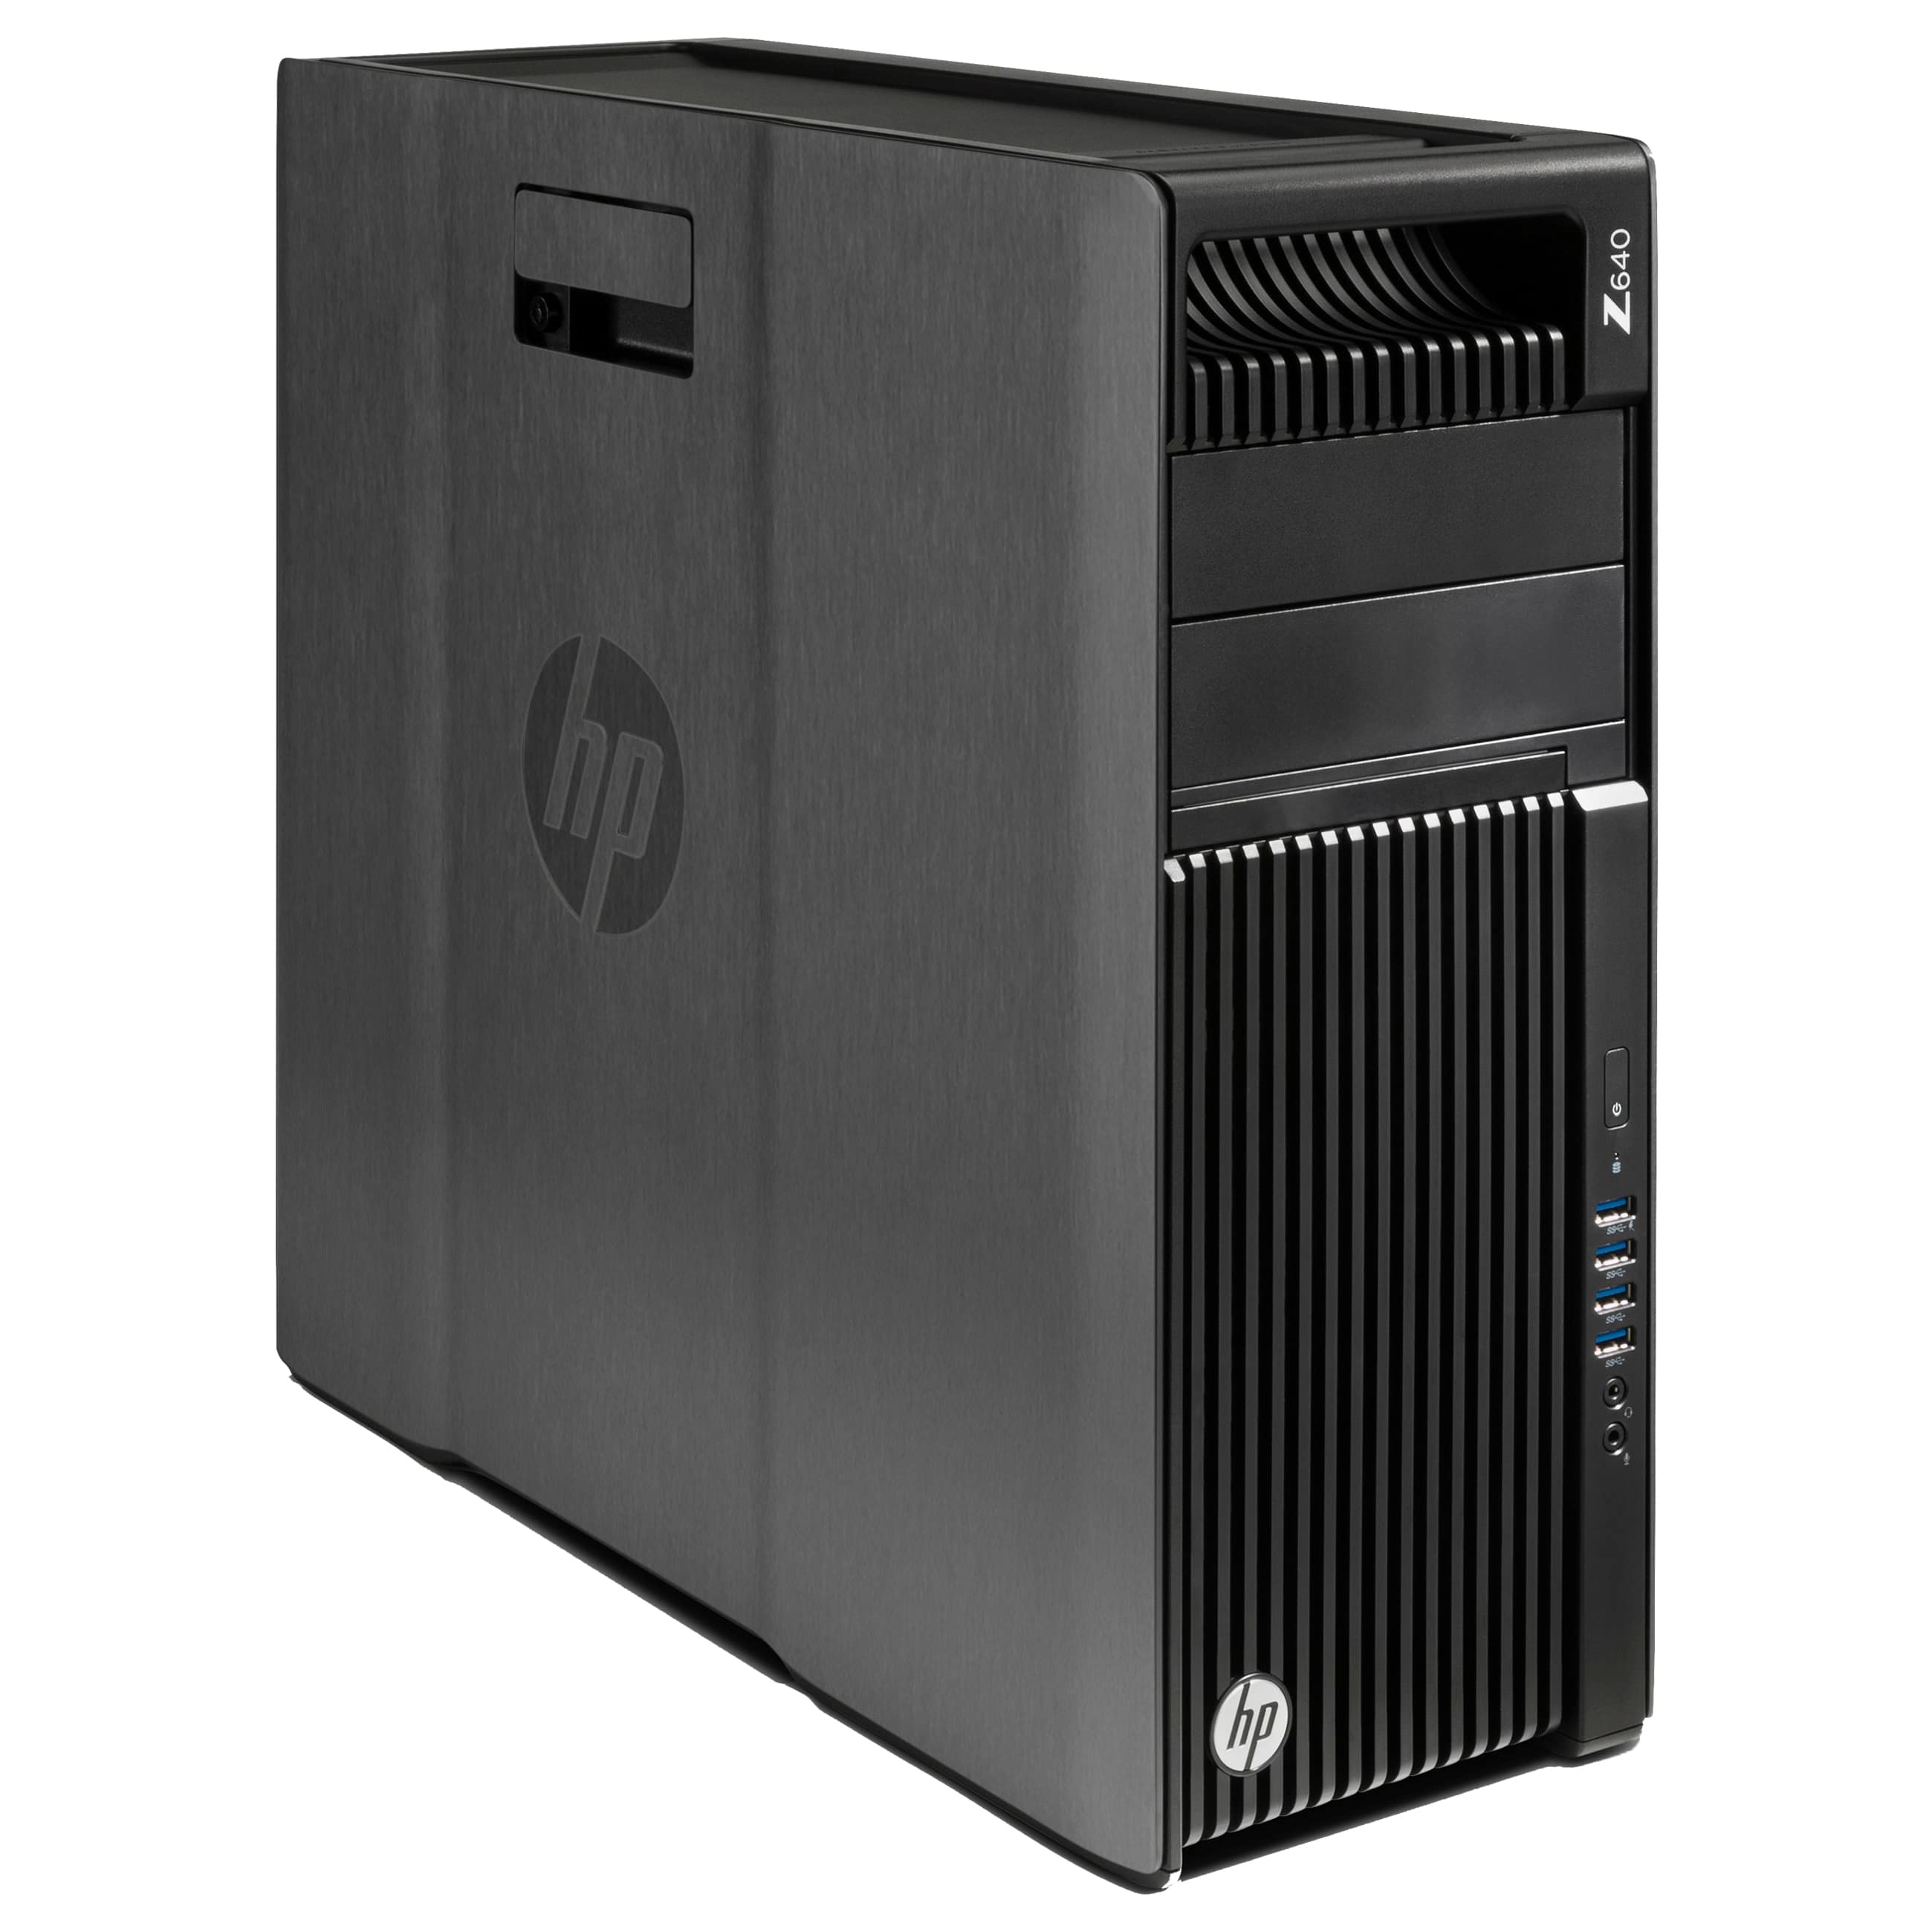 HP Z640 - Tower - 2x Intel Xeon E5-2680 v4 @ 2,4 GHz - 32 GB DDR4 - 500 GB SSD - DVD-RW - Quadro M4000  - Windows 10 Professional